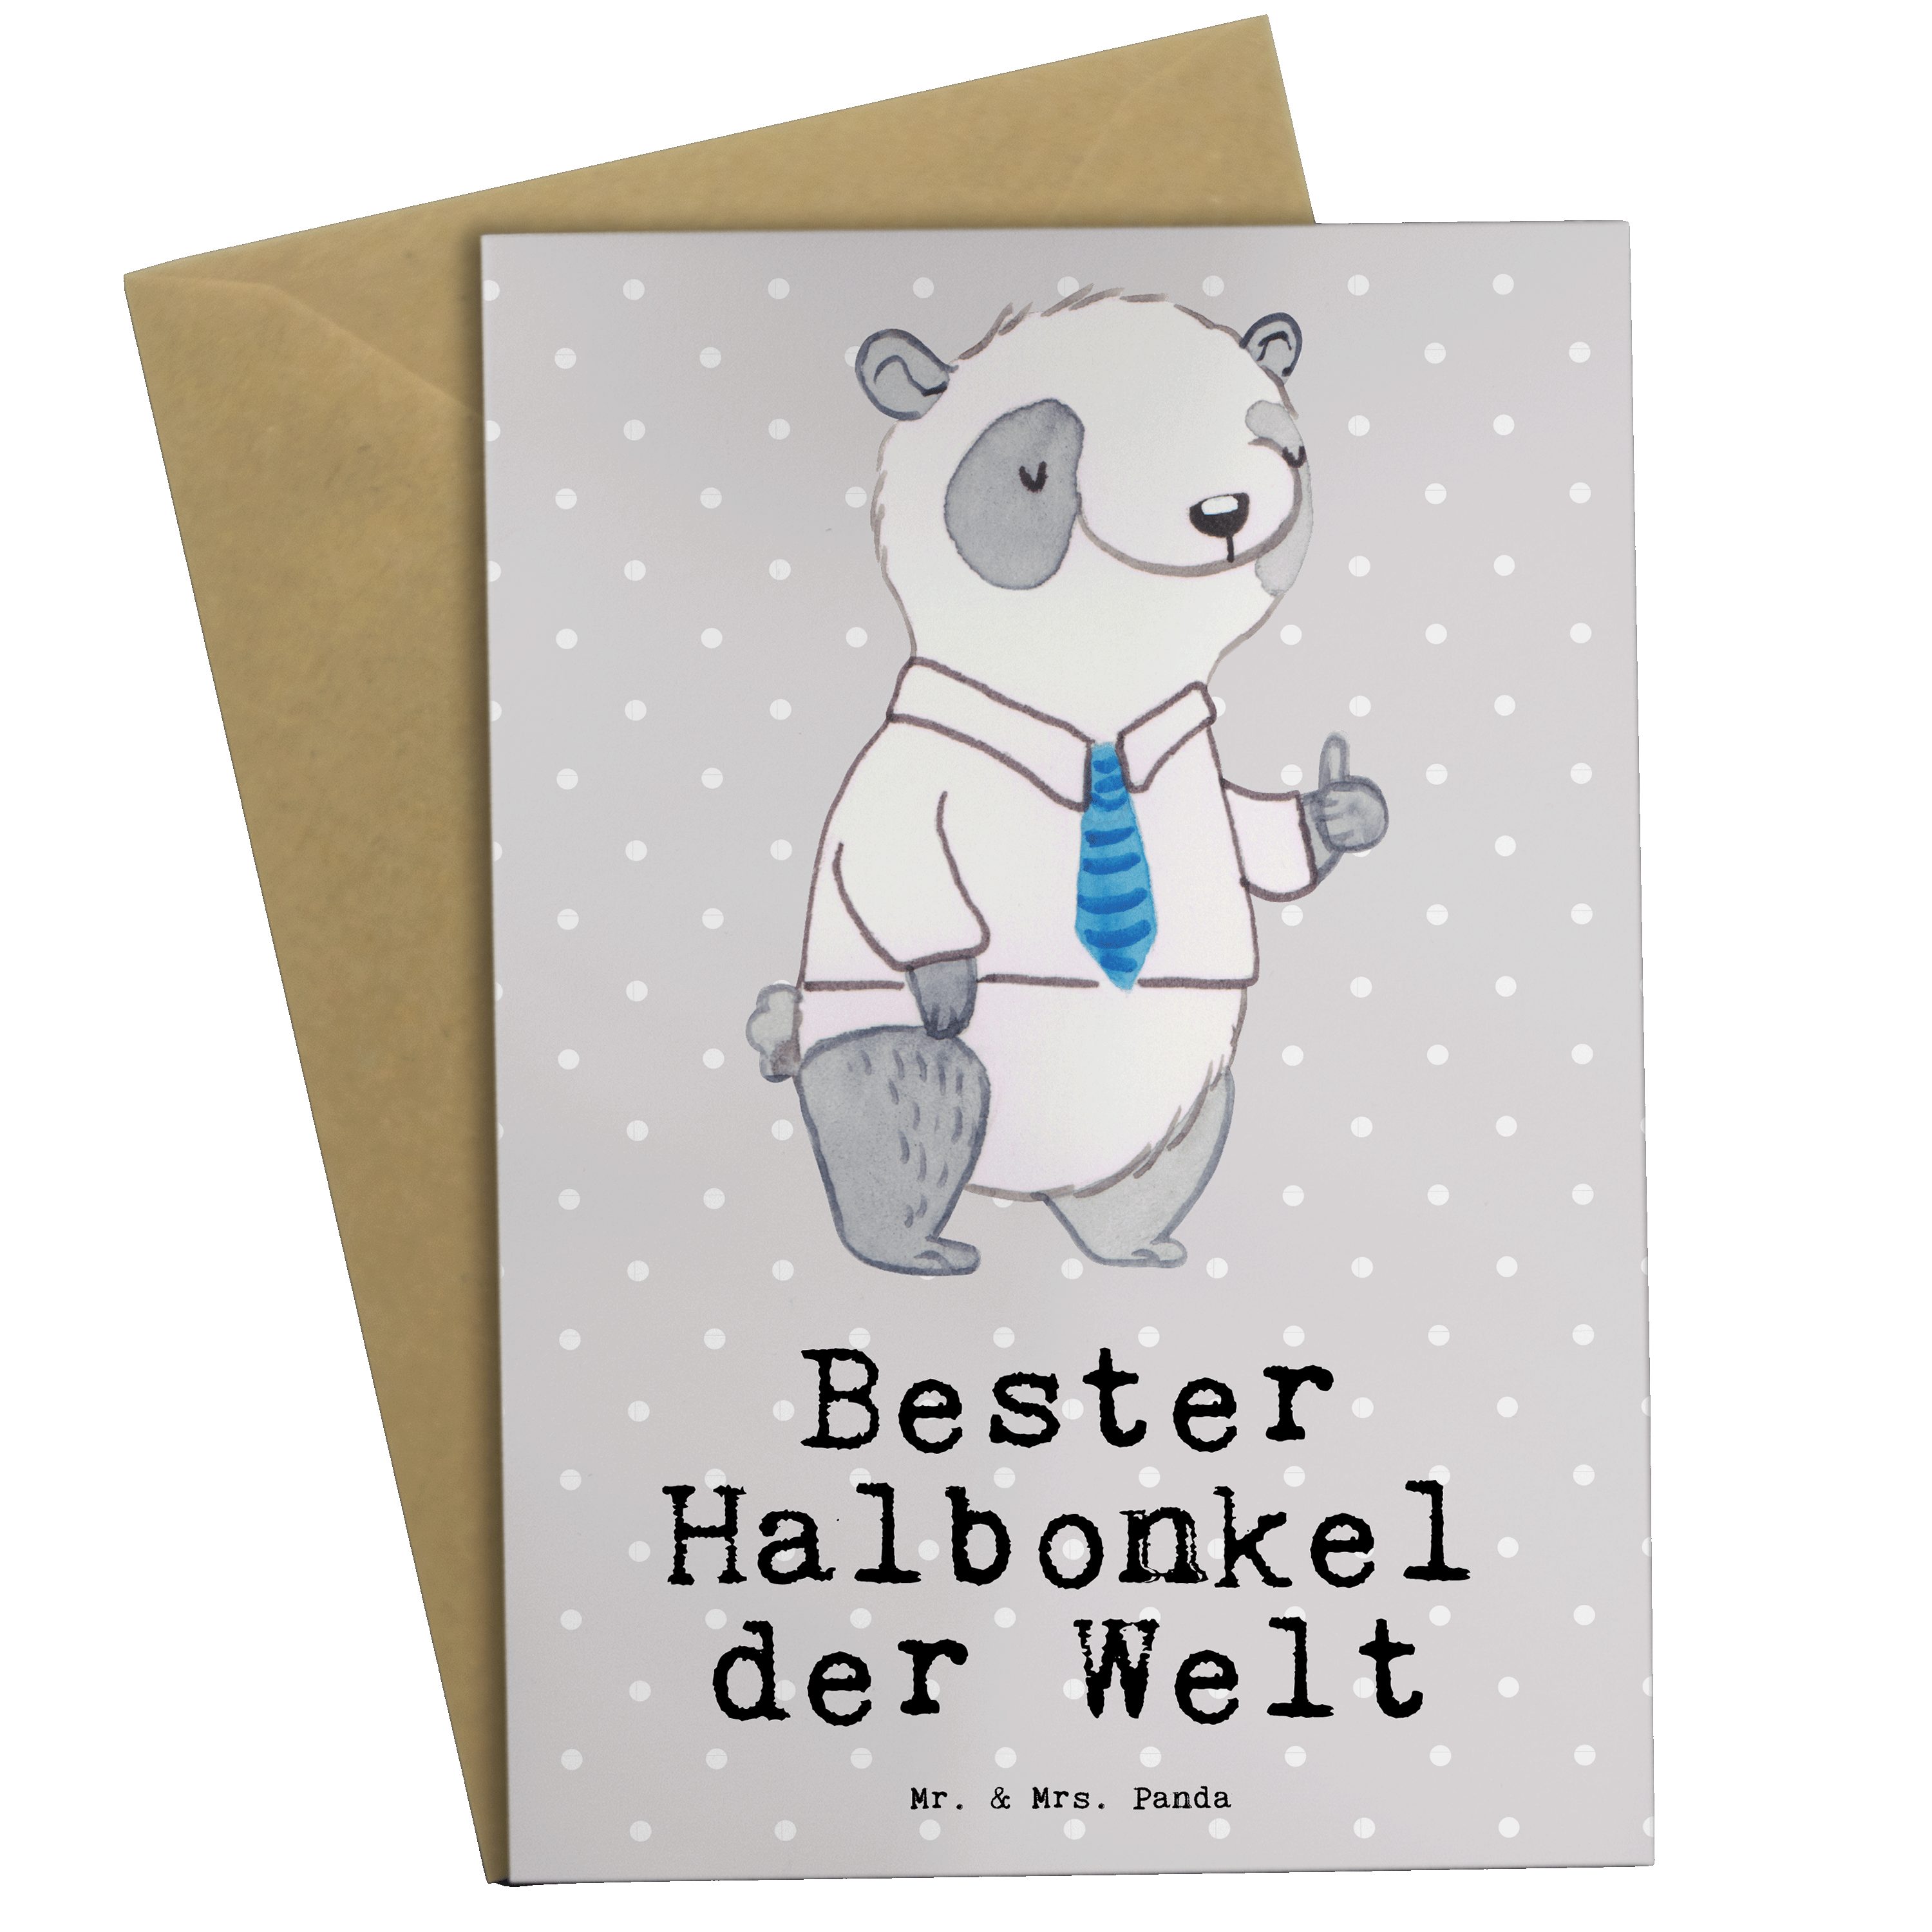 Mr. & Mrs. Panda Grußkarte Panda Bester Halbonkel der Welt - Grau Pastell - Geschenk, Kleinigkei